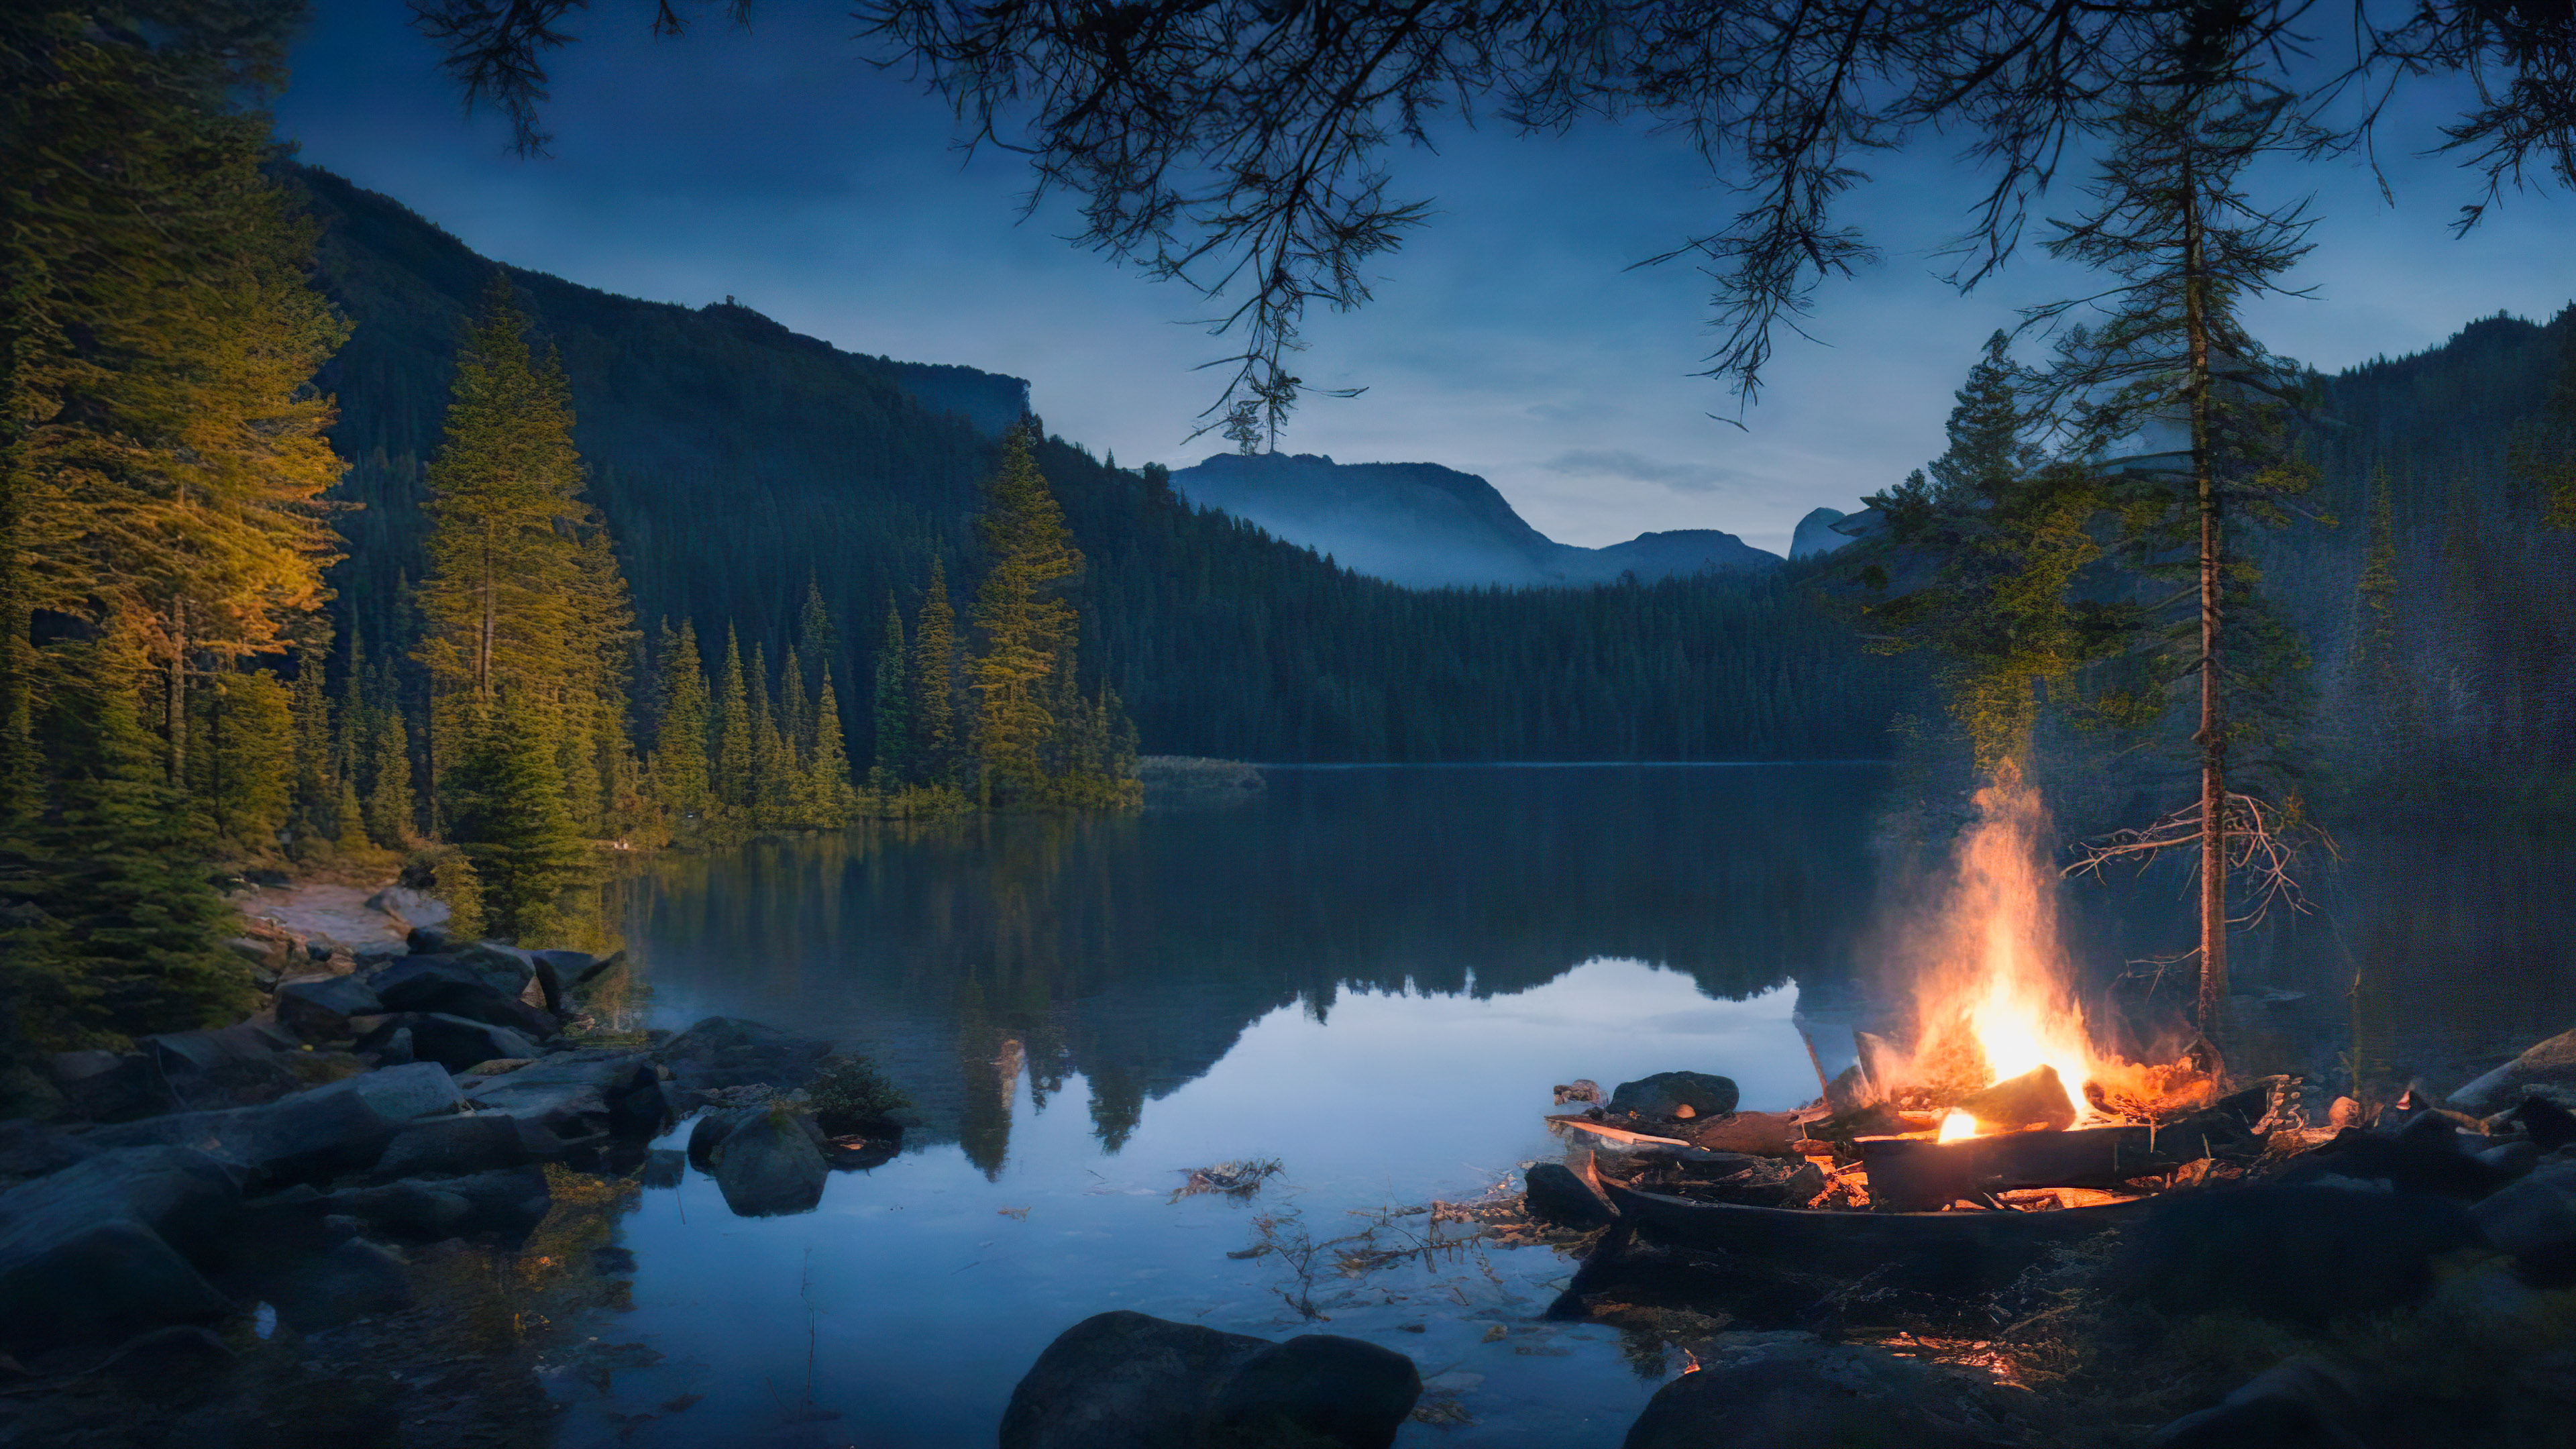 Transformez votre PC avec notre fond d'écran nature de bureau en HD, présentant un campement au bord d'un lac serein et un feu de camp vacillant, entouré d'une forêt sombre et boisée, et ressentez la tranquillité s'infiltrer dans votre espace de travail.